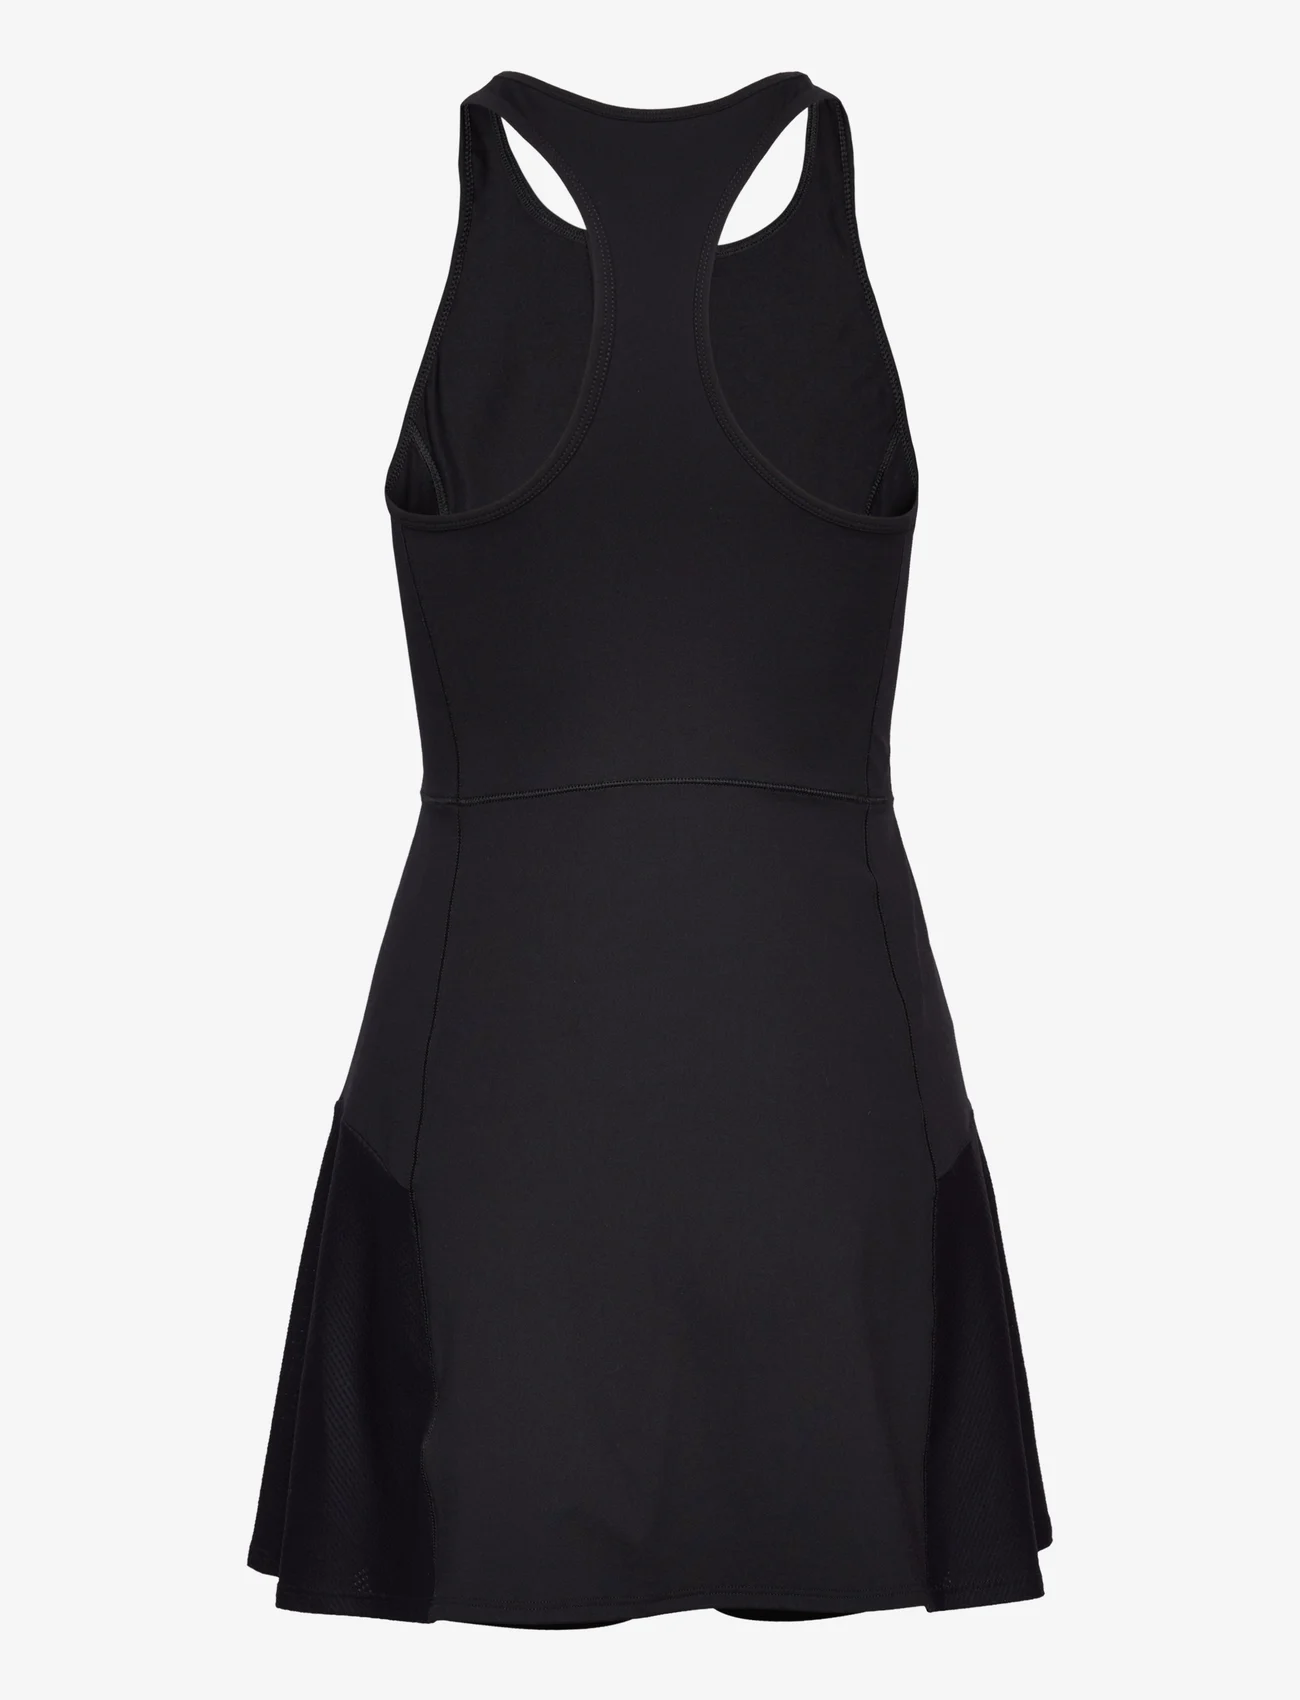 Casall - Court Dress - black - 1